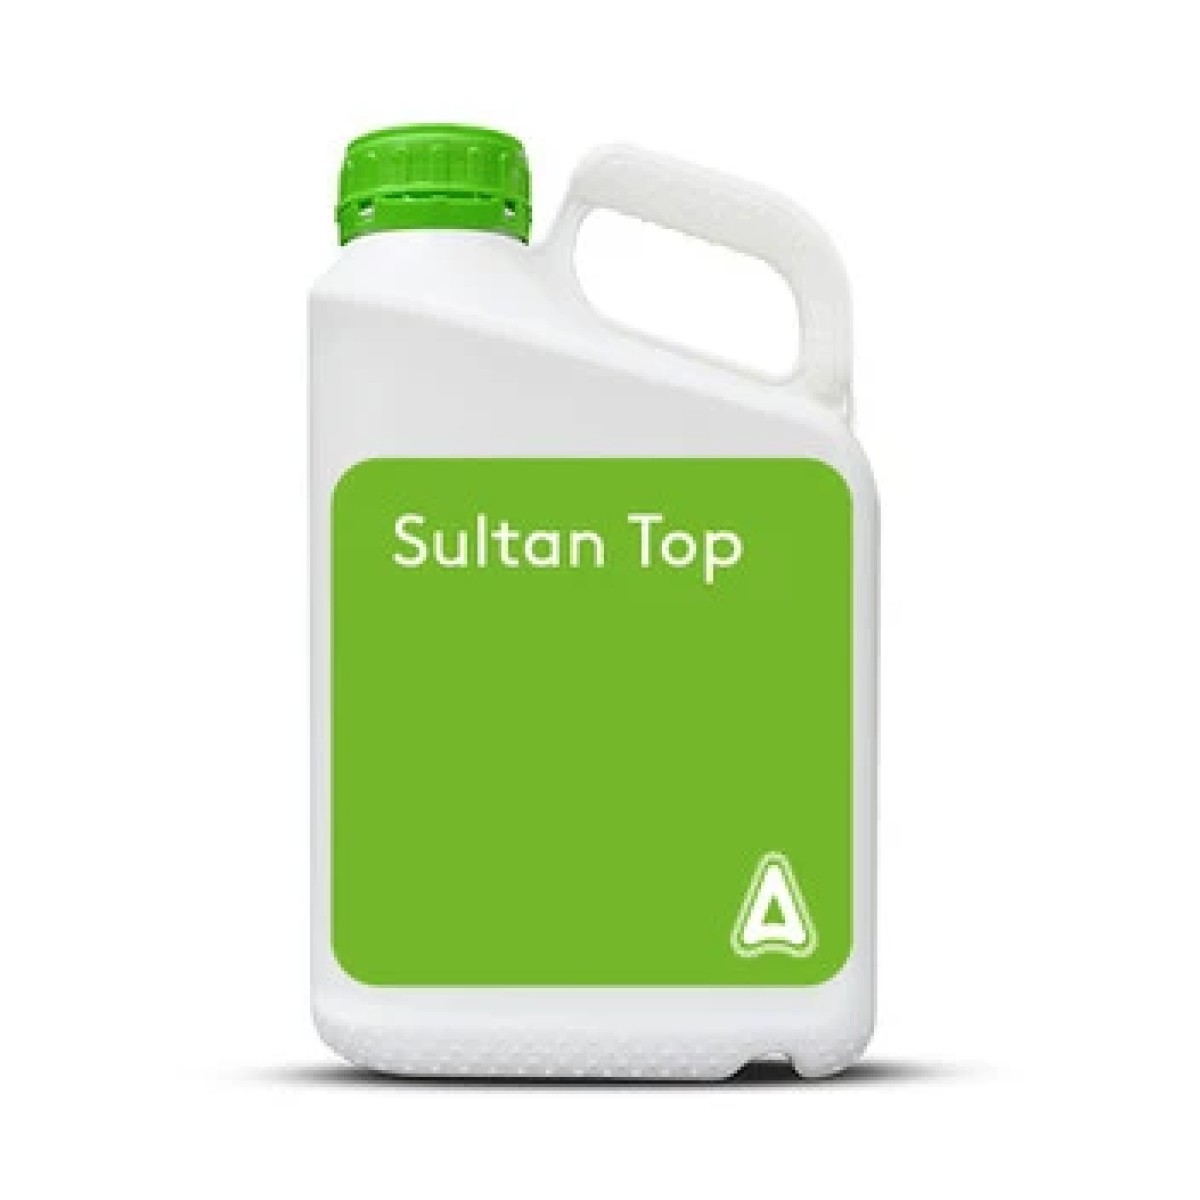 Sultan top